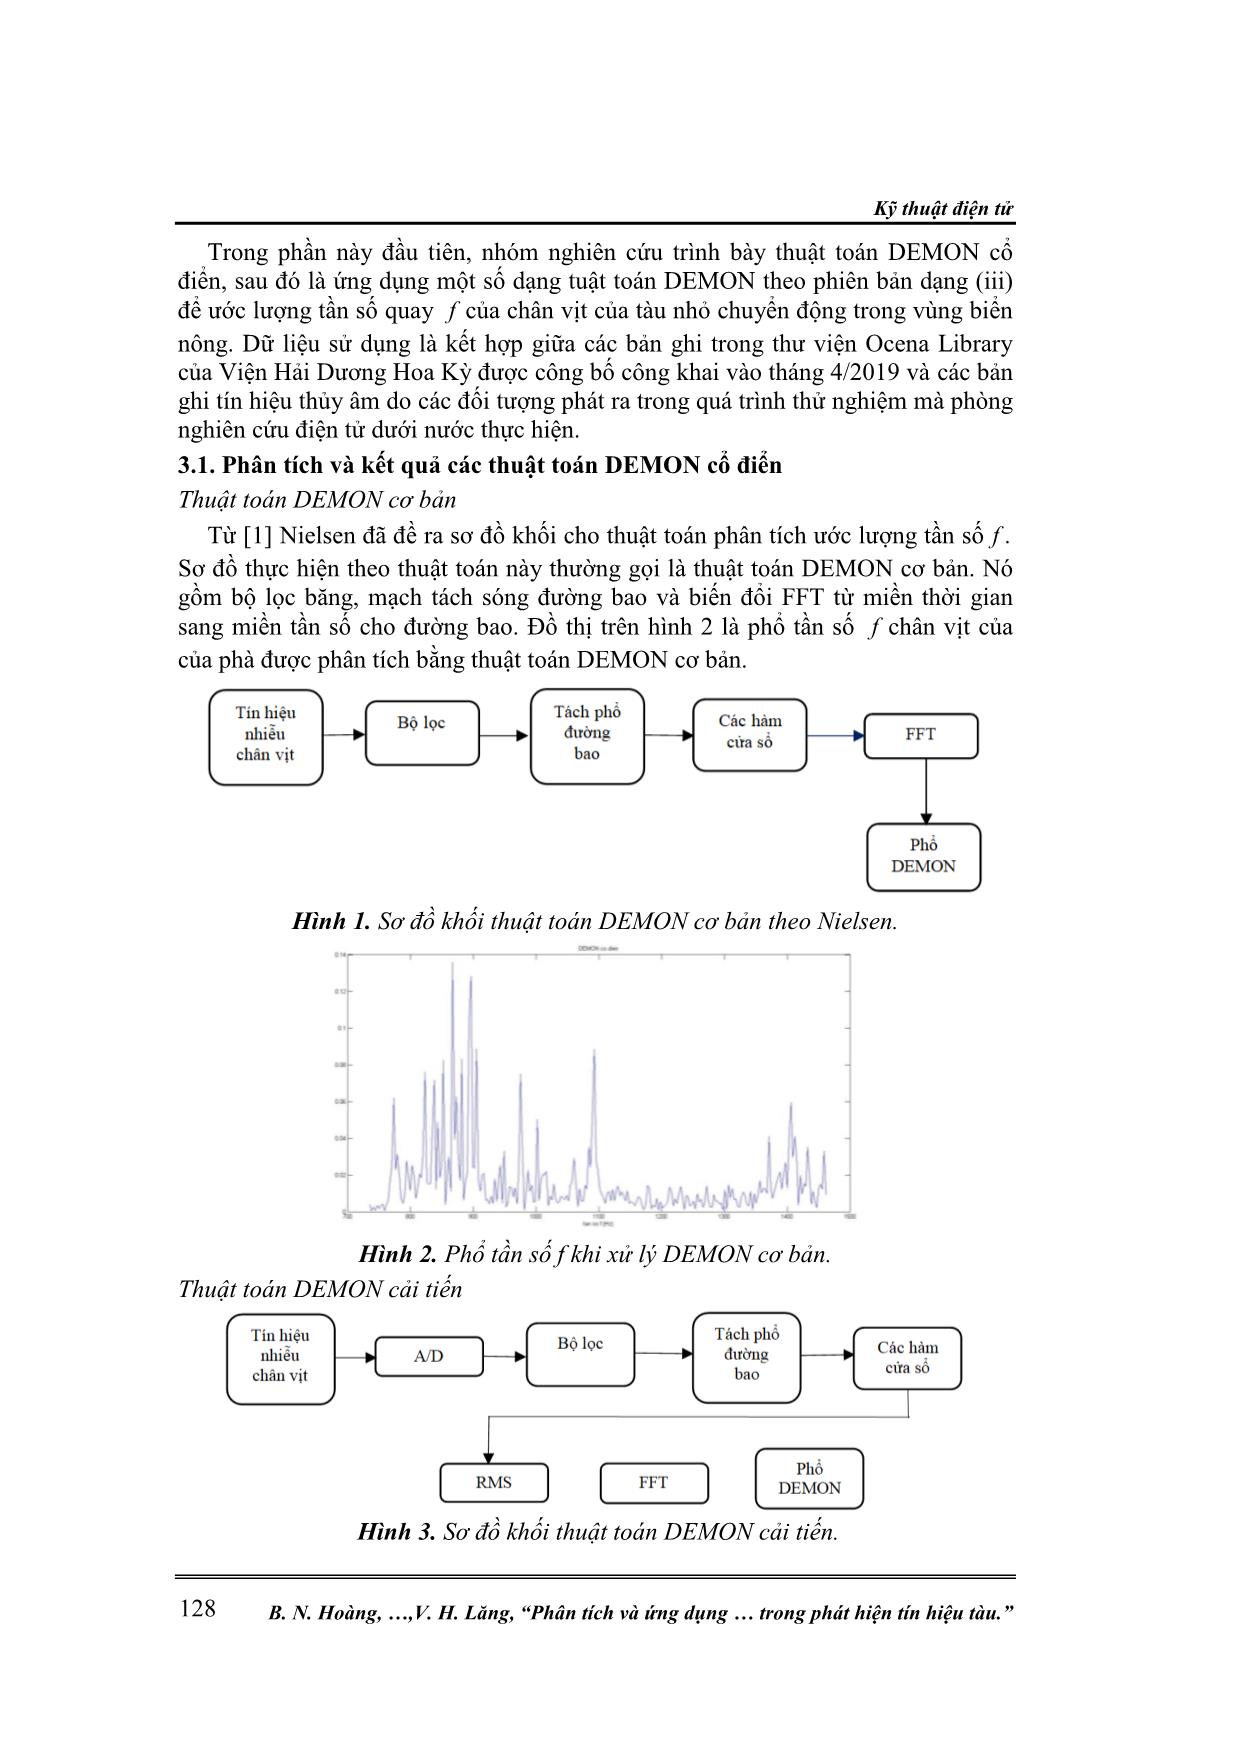 Phân tích và ứng dụng các thuật toán dạng demon dùng trong phát hiện tín hiệu tàu trang 4